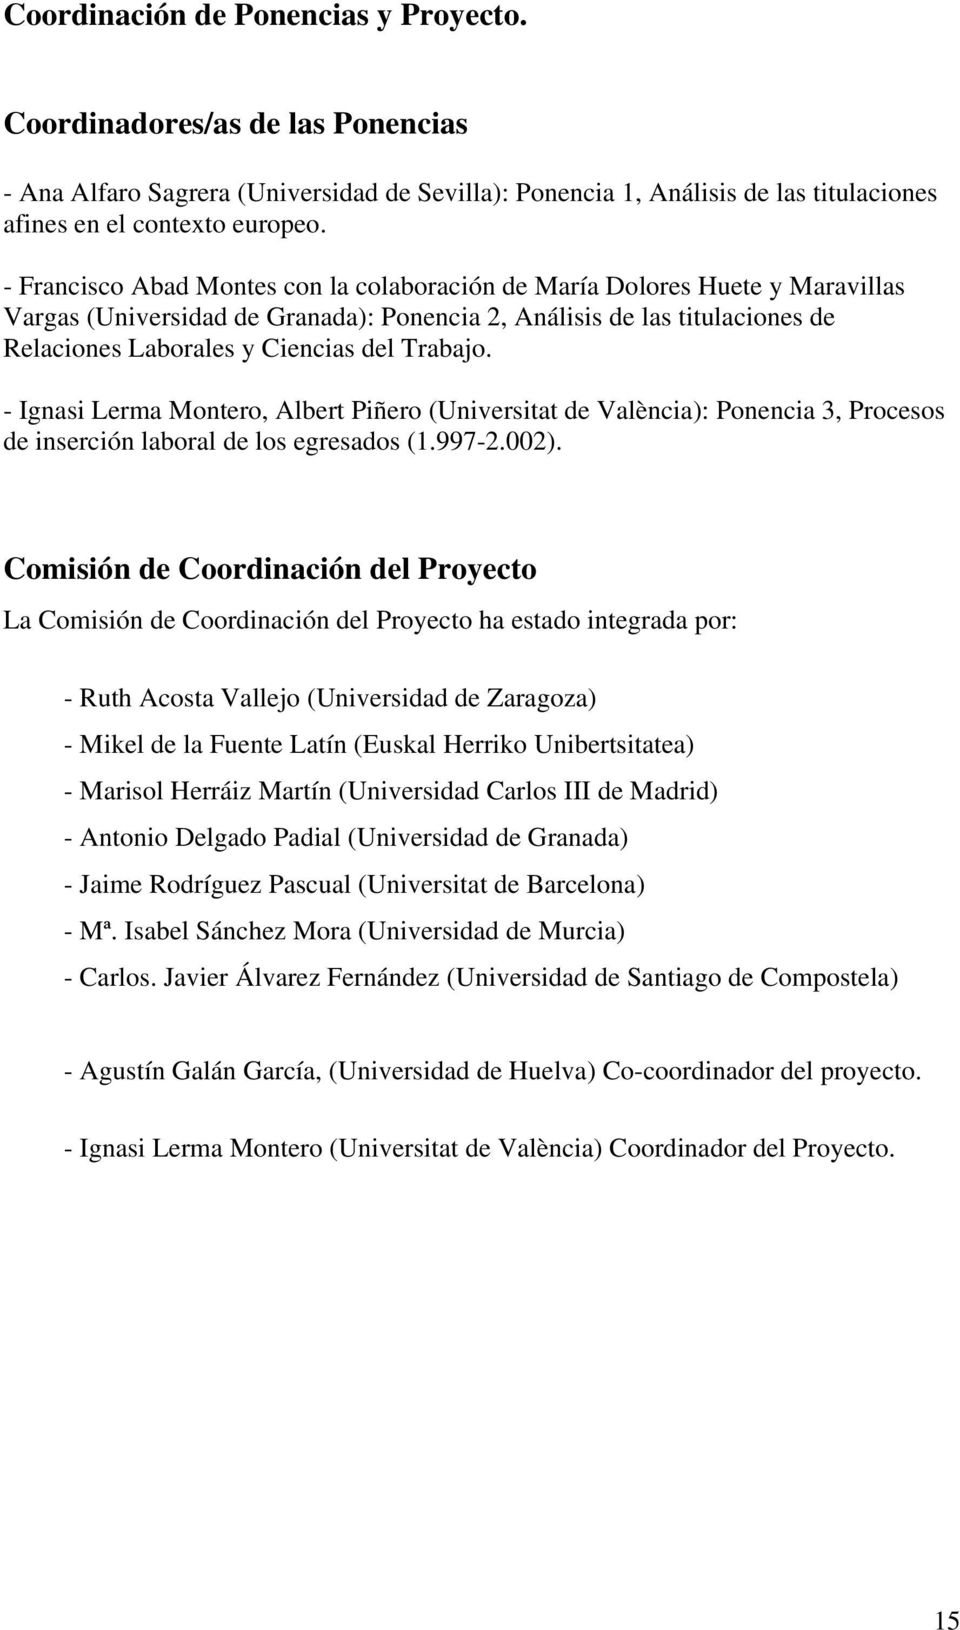 Trabajo. - Ignasi Lerma Montero, Albert Piñero (Universitat de València): Ponencia 3, Procesos de inserción laboral de los egresados (1.997-2.002).